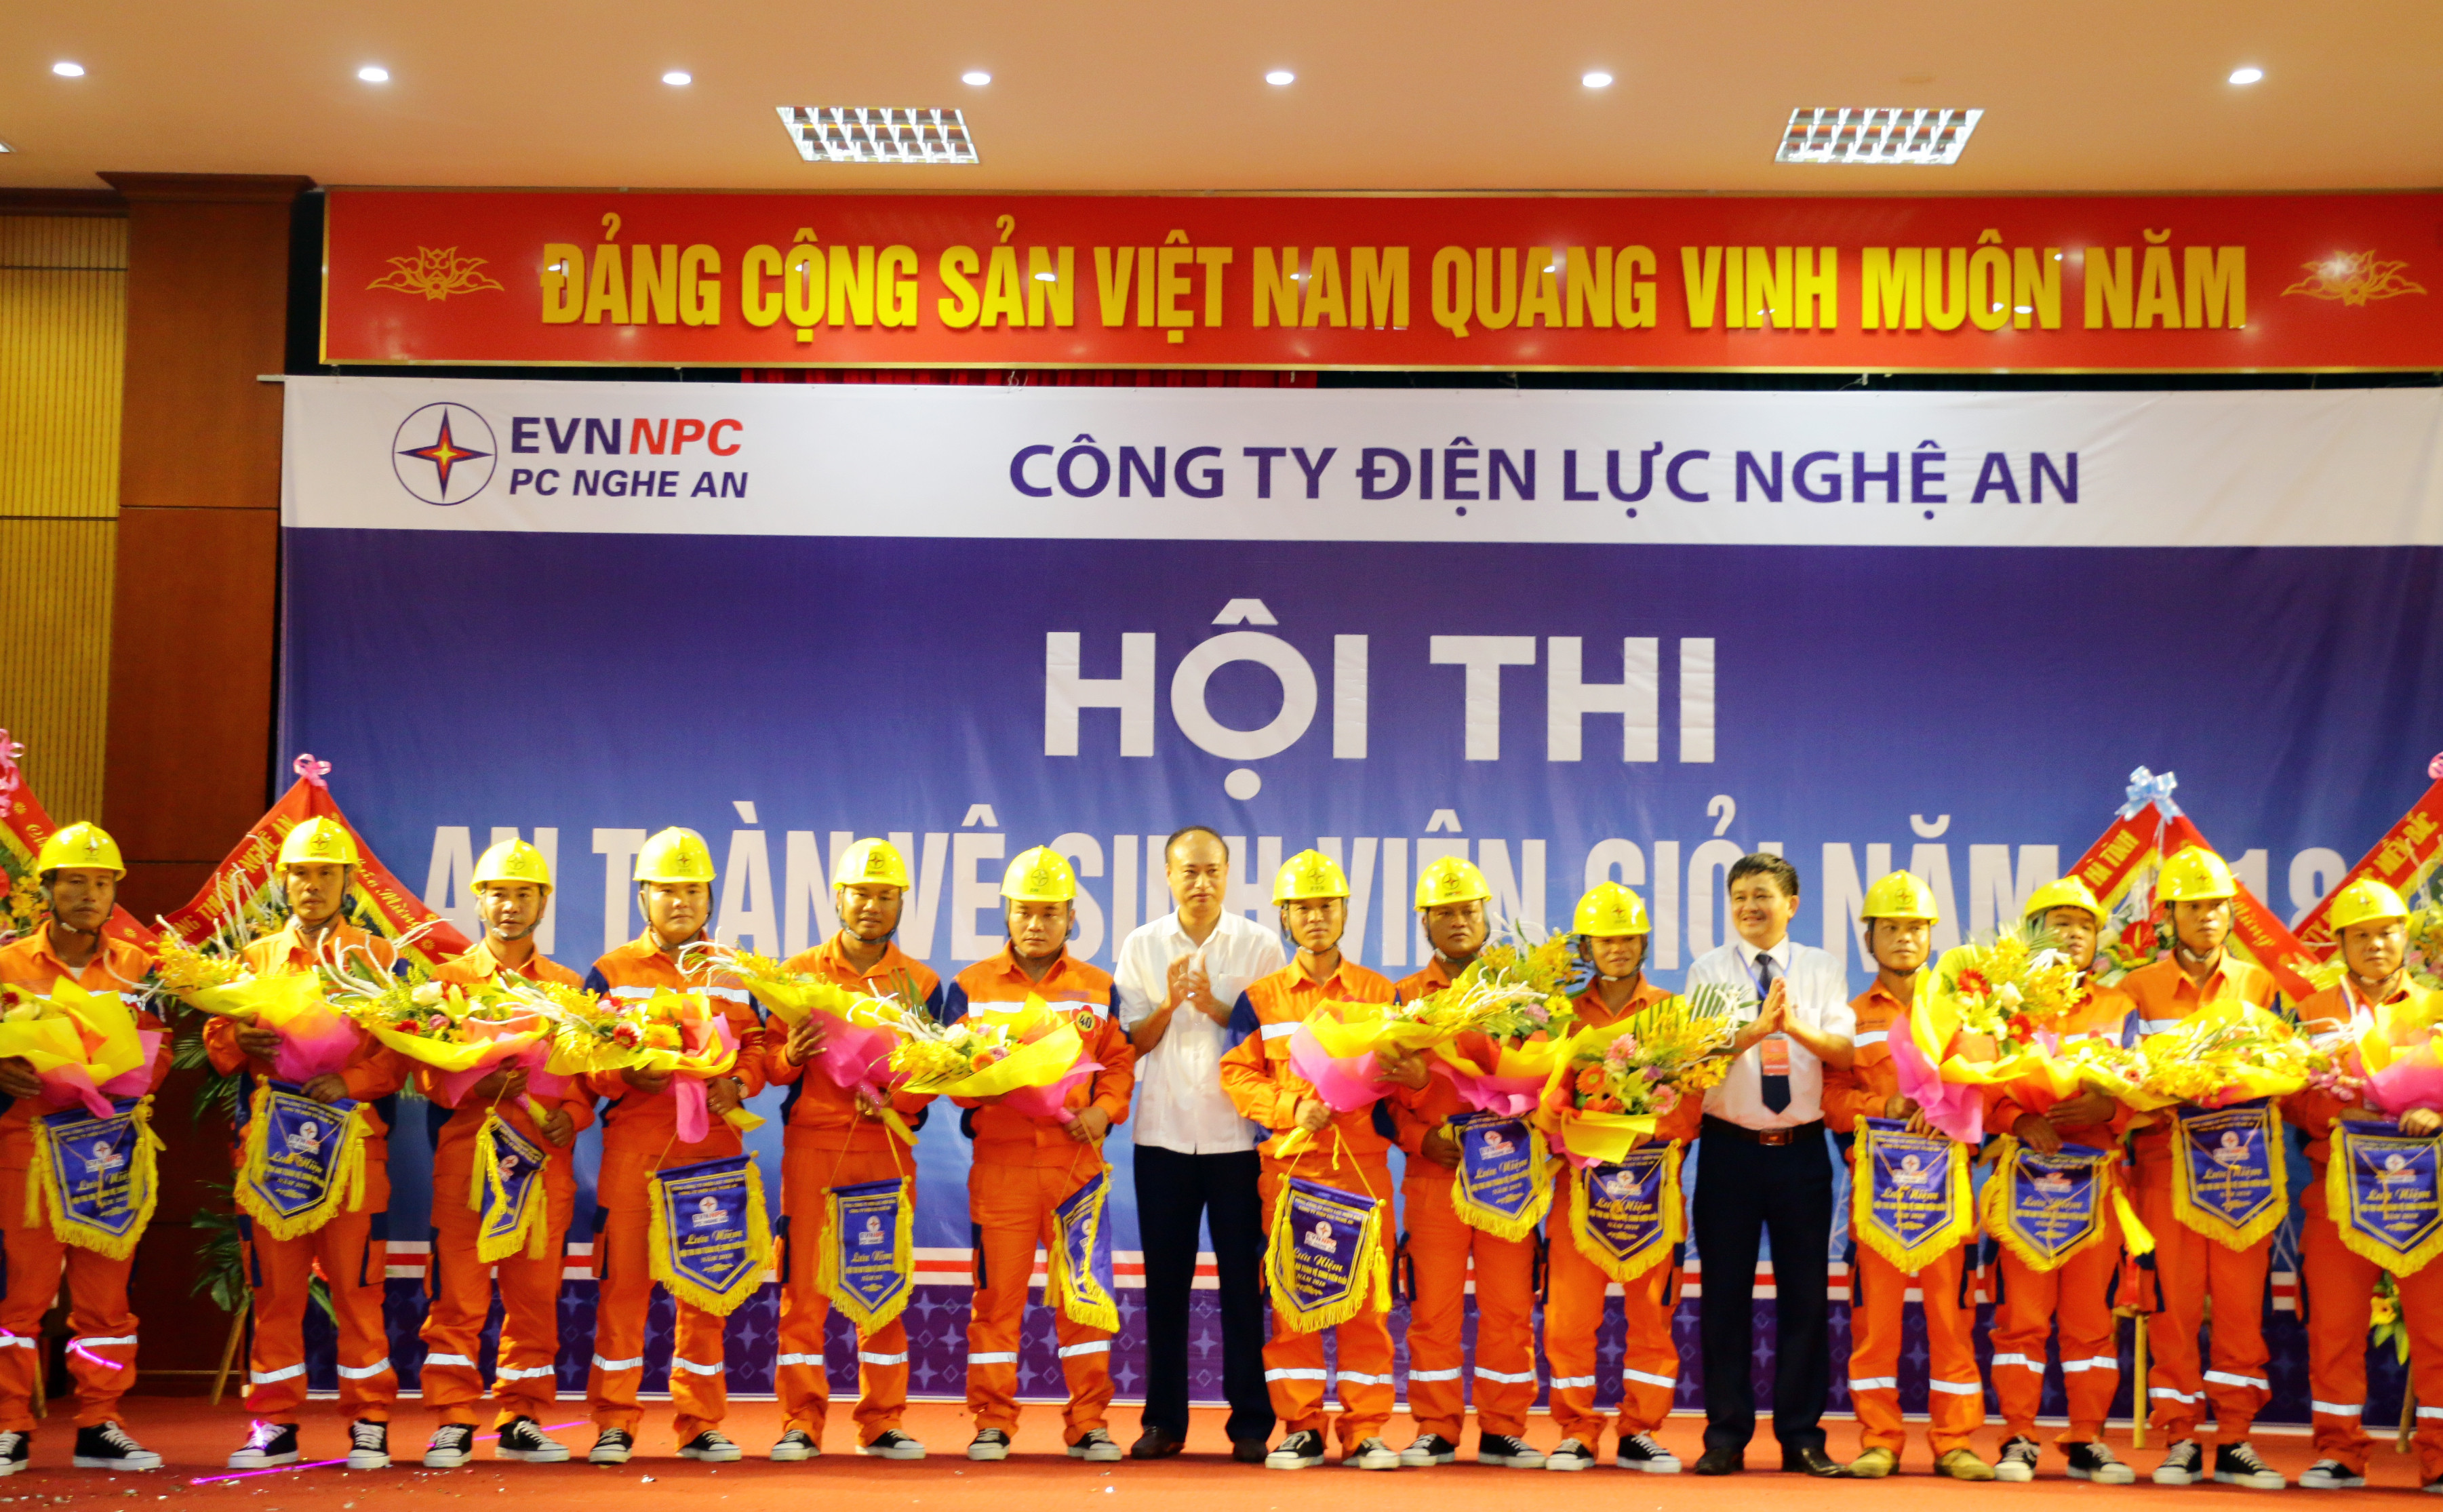 Đồng chí Trịnh Phương Trâm - Giám đốc Công ty Điện lực Nghệ An tặng hoa và cờ lưu niệm cho các đơn vị tham gia hội thi. Ảnh: Mỹ Hà